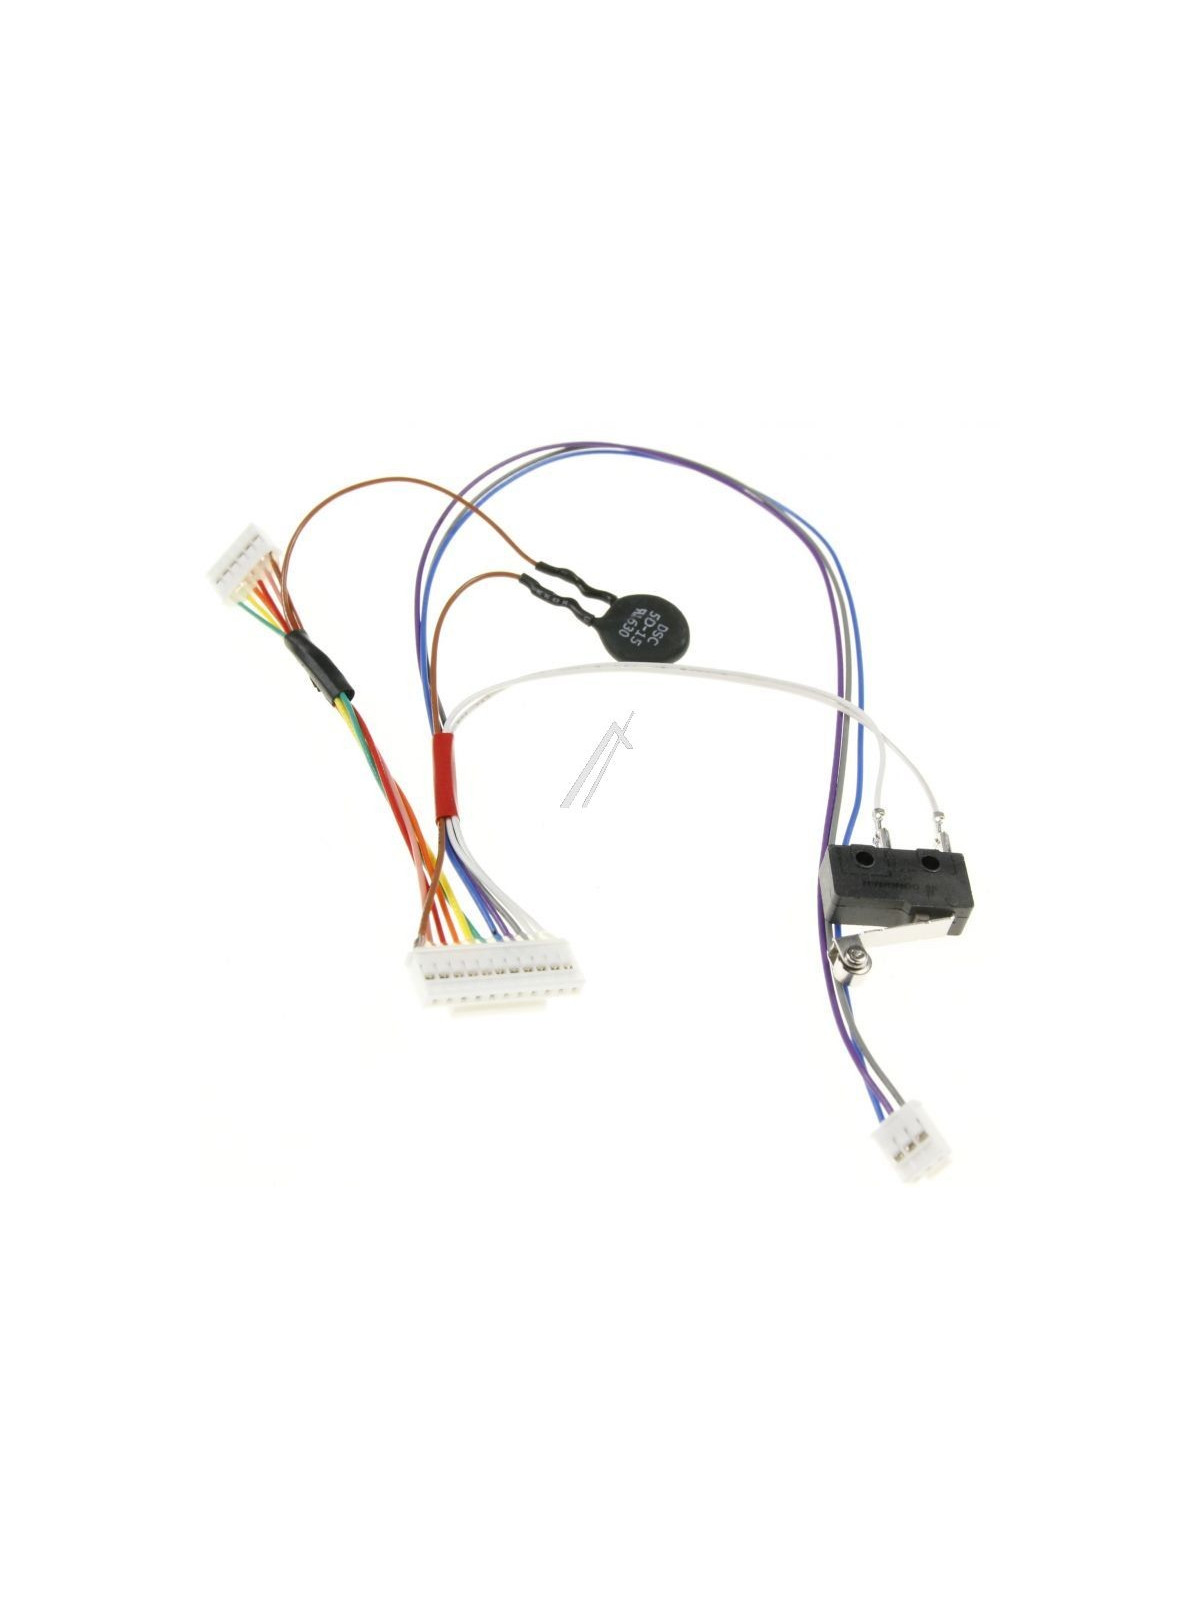 Faisceau cable roue motrice LG Hom-Bot 3.0 / Square - Aspirateur robot